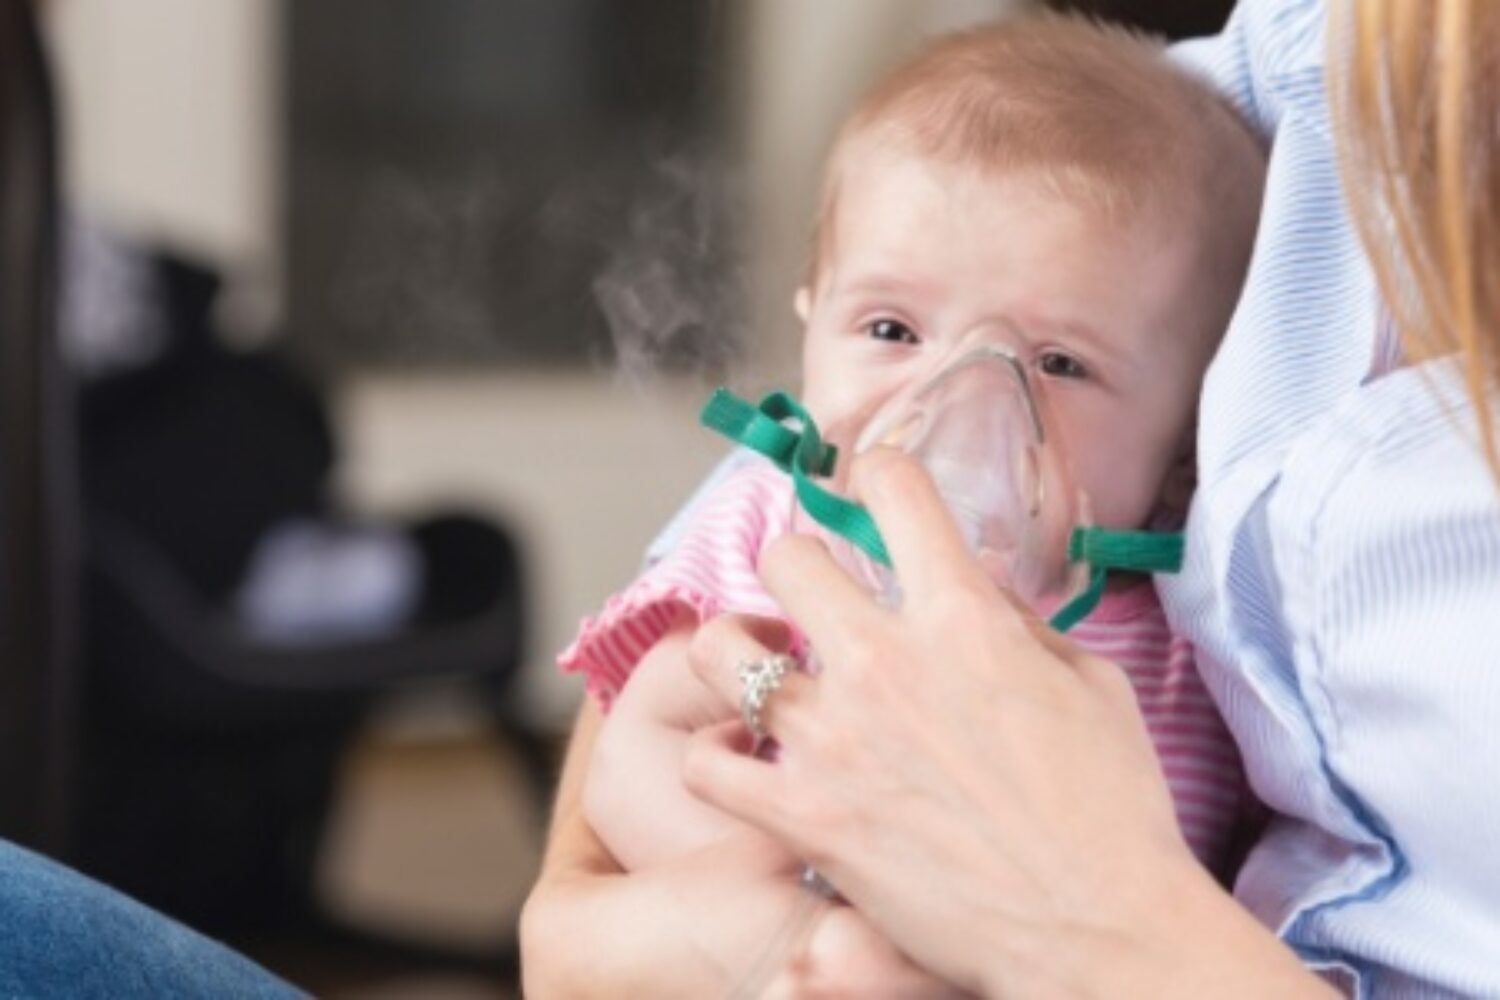 Bebê no colo da mãe, respirando com auxílio de um nebulizador no rosto